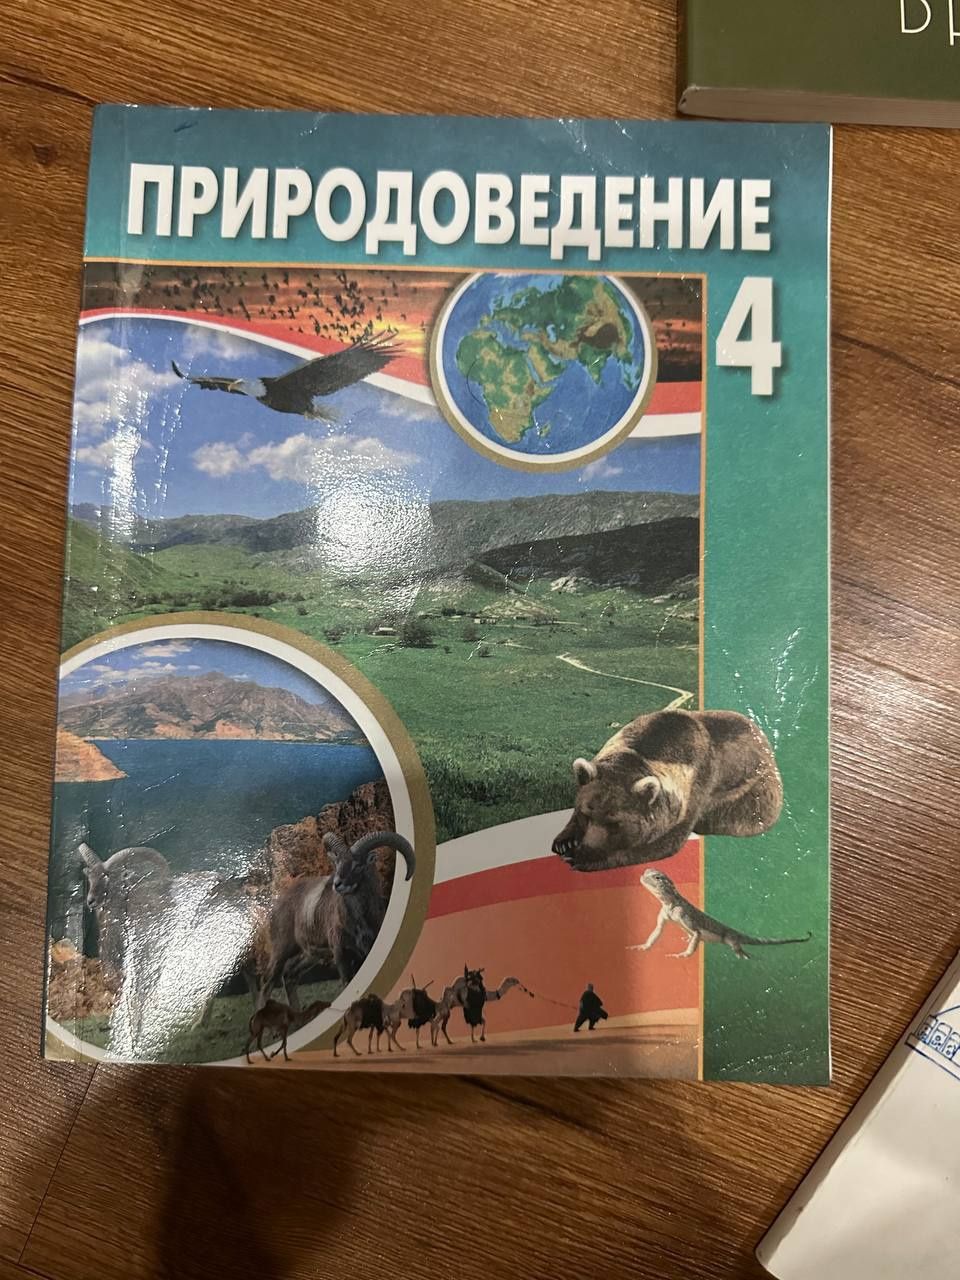 Книга по природоведению за 4 класс